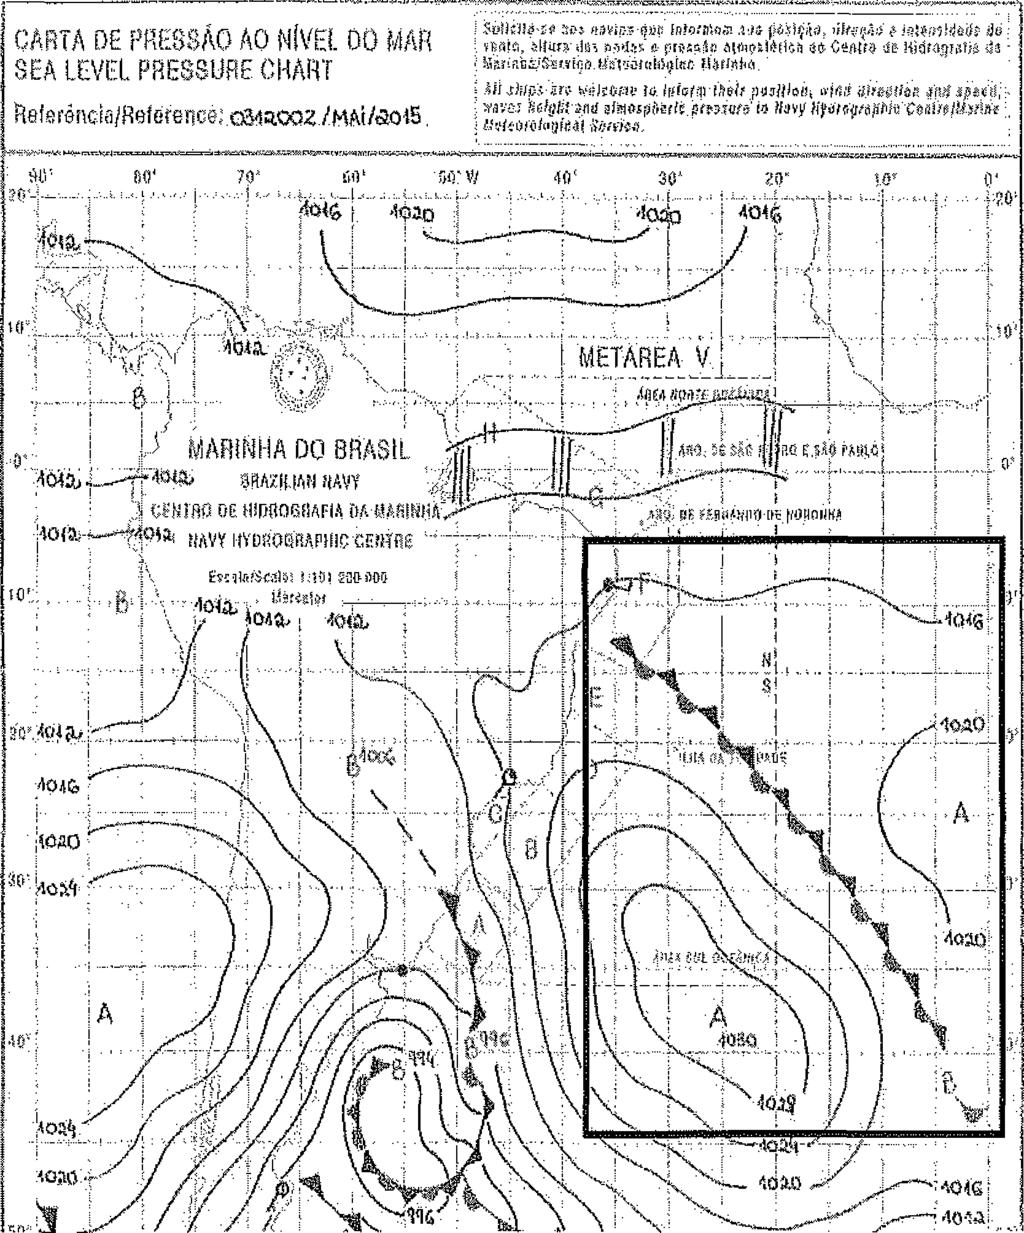 4) Analise a figura a seguir. Fonte: Carta de Pressão ao Nível do Mar, elaborada pelo Serviço Meteorológico Marinha do Centro de Hidrografia da Marinha (CHM).